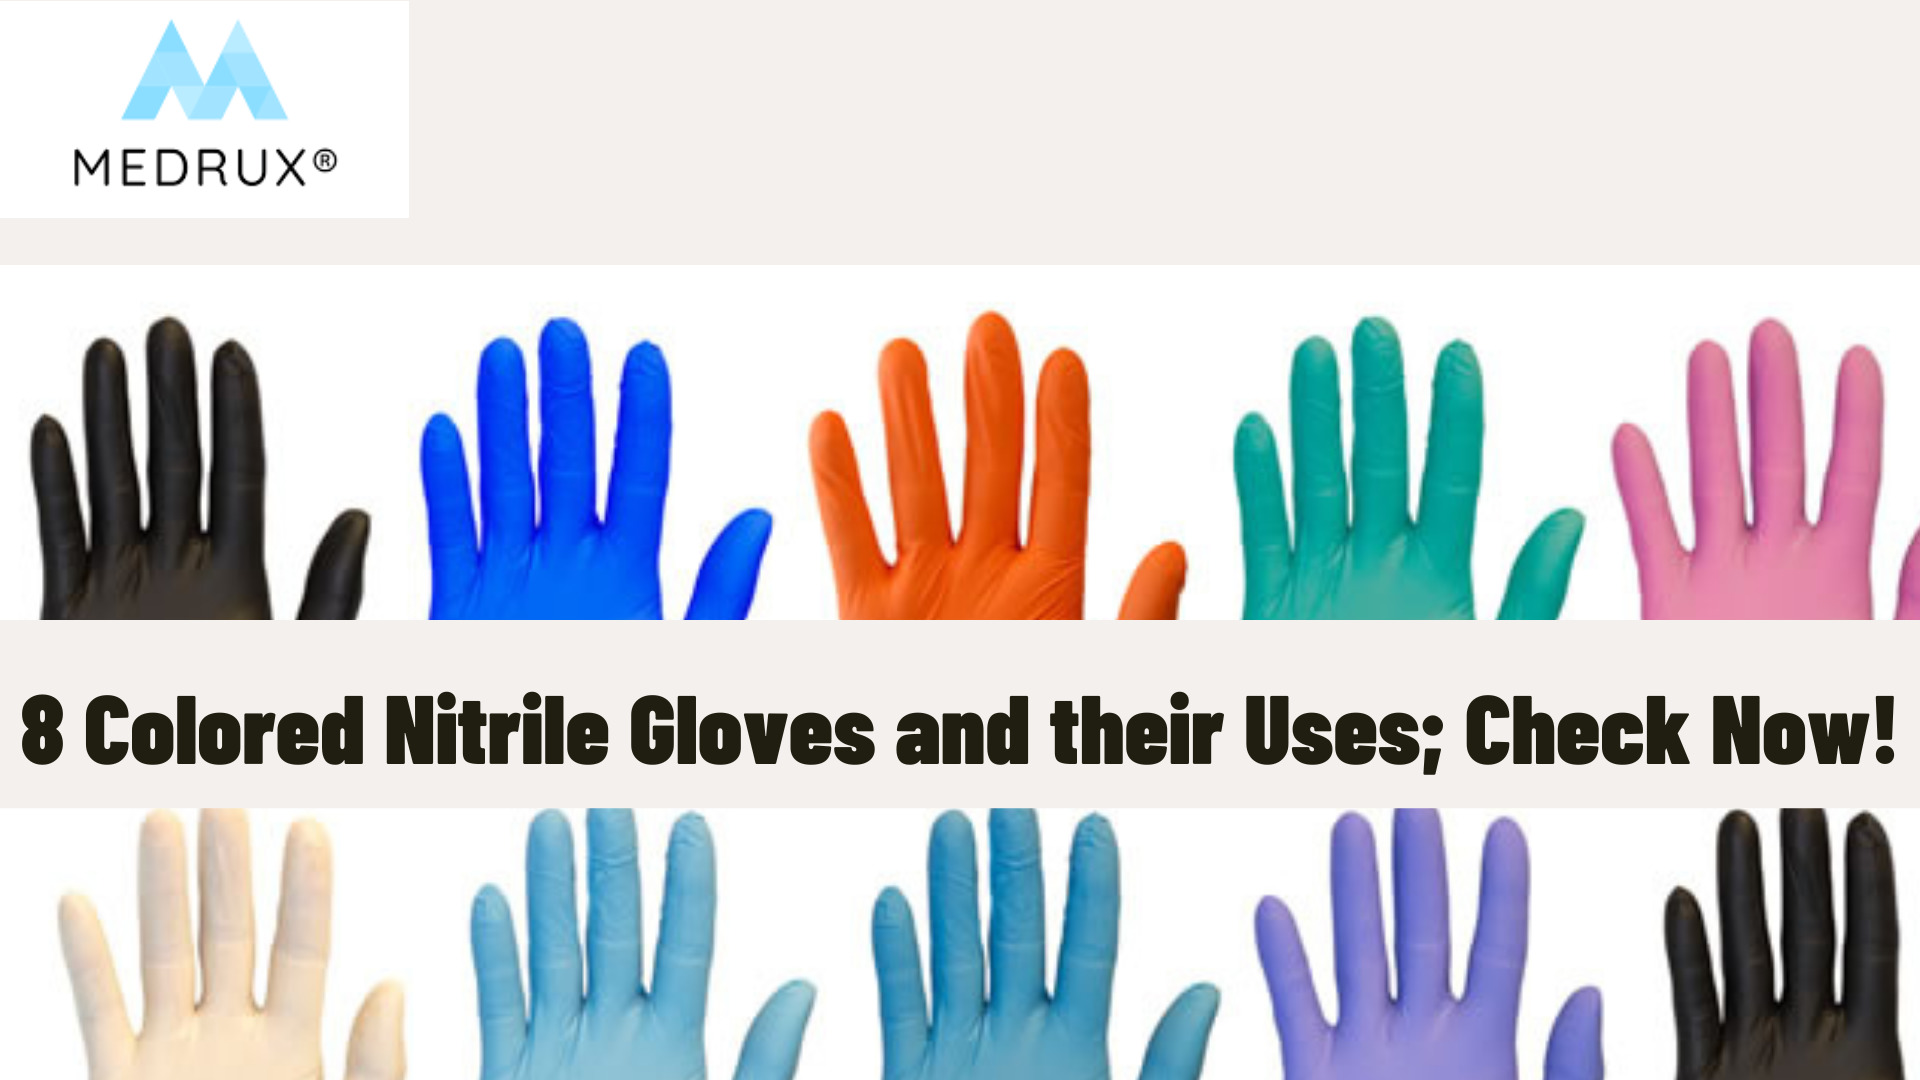 Cut Resistant Gloves Food Grade Level 5 Protection - Large - Orange